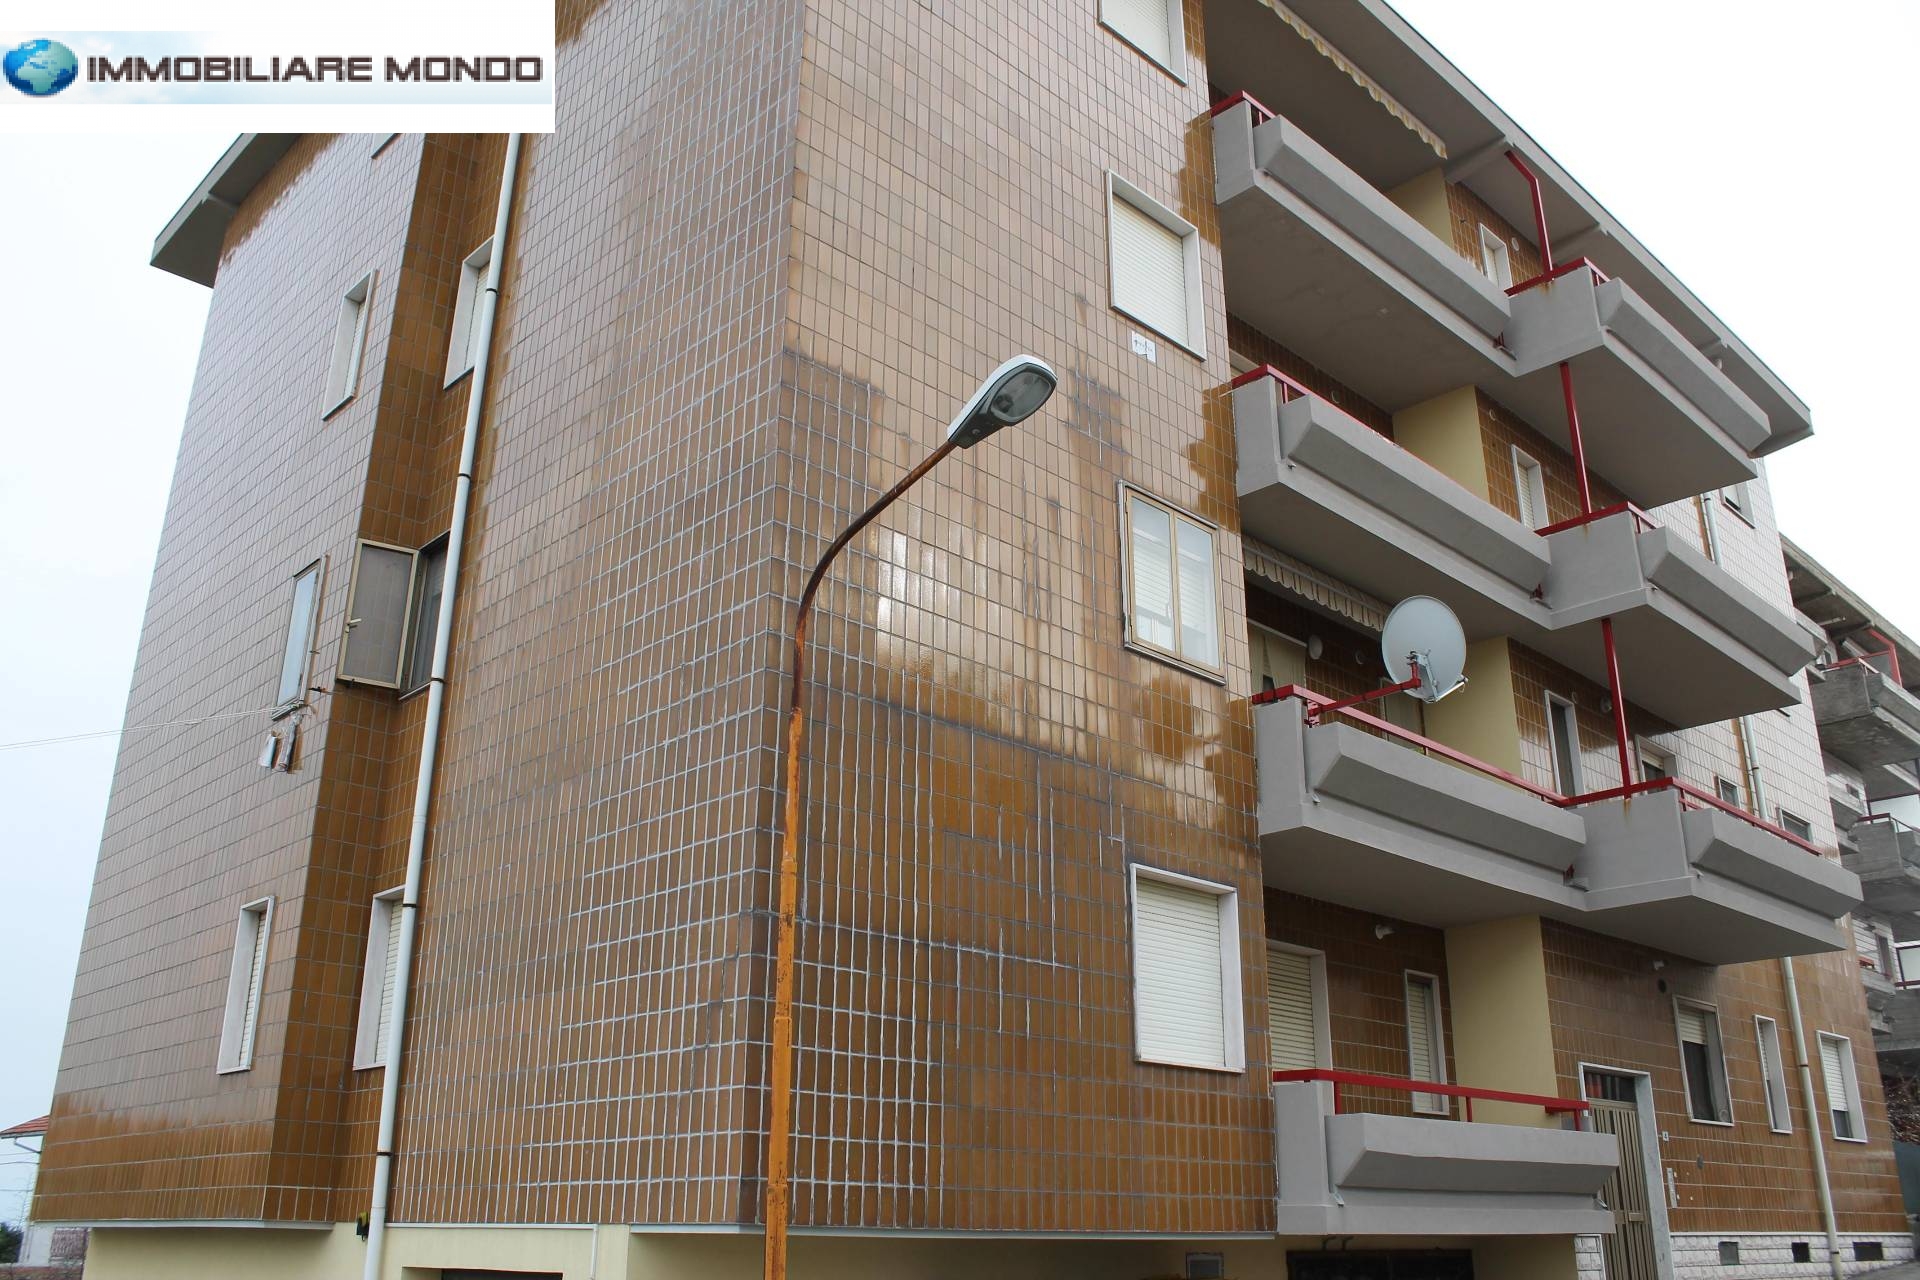 Appartamento in vendita a Portocannone, 5 locali, prezzo € 59.000 | PortaleAgenzieImmobiliari.it